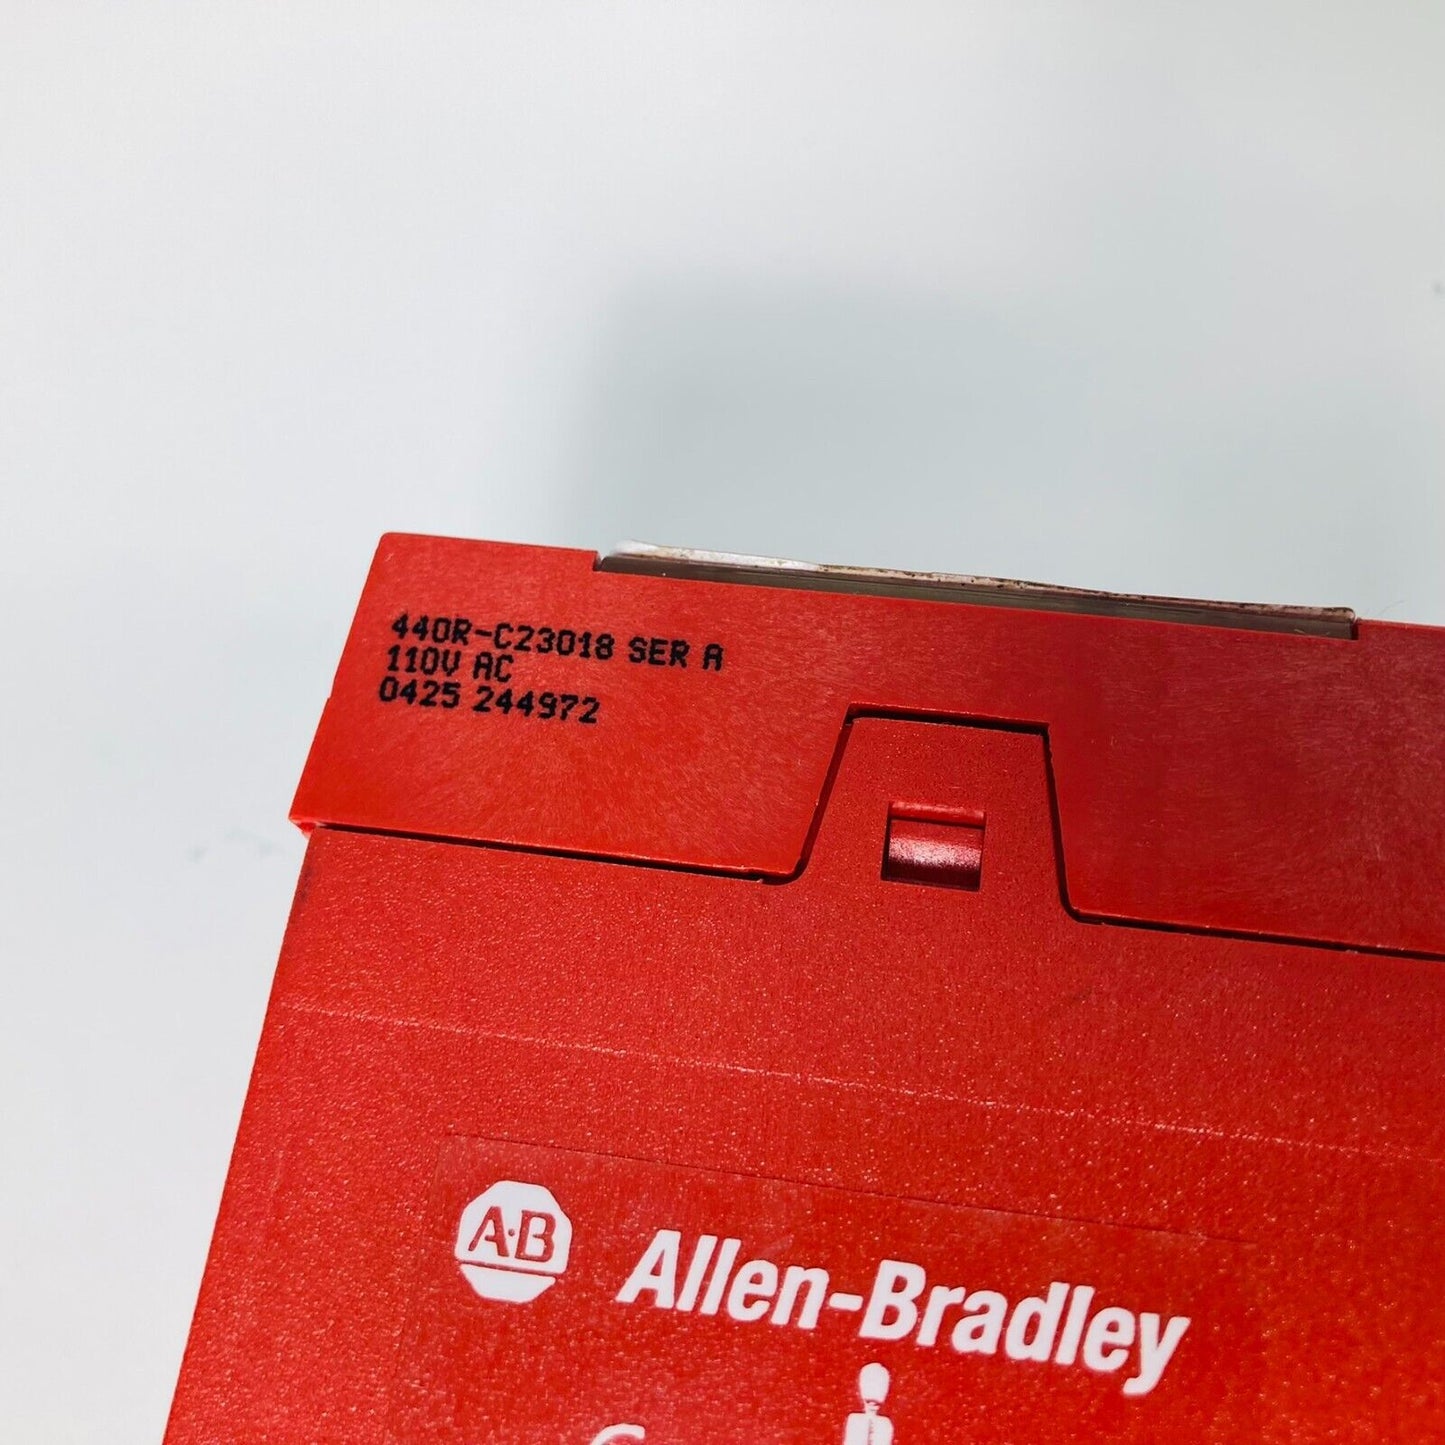 Allen-Bradley Guardmaster 440R-C23018 Safety Relay